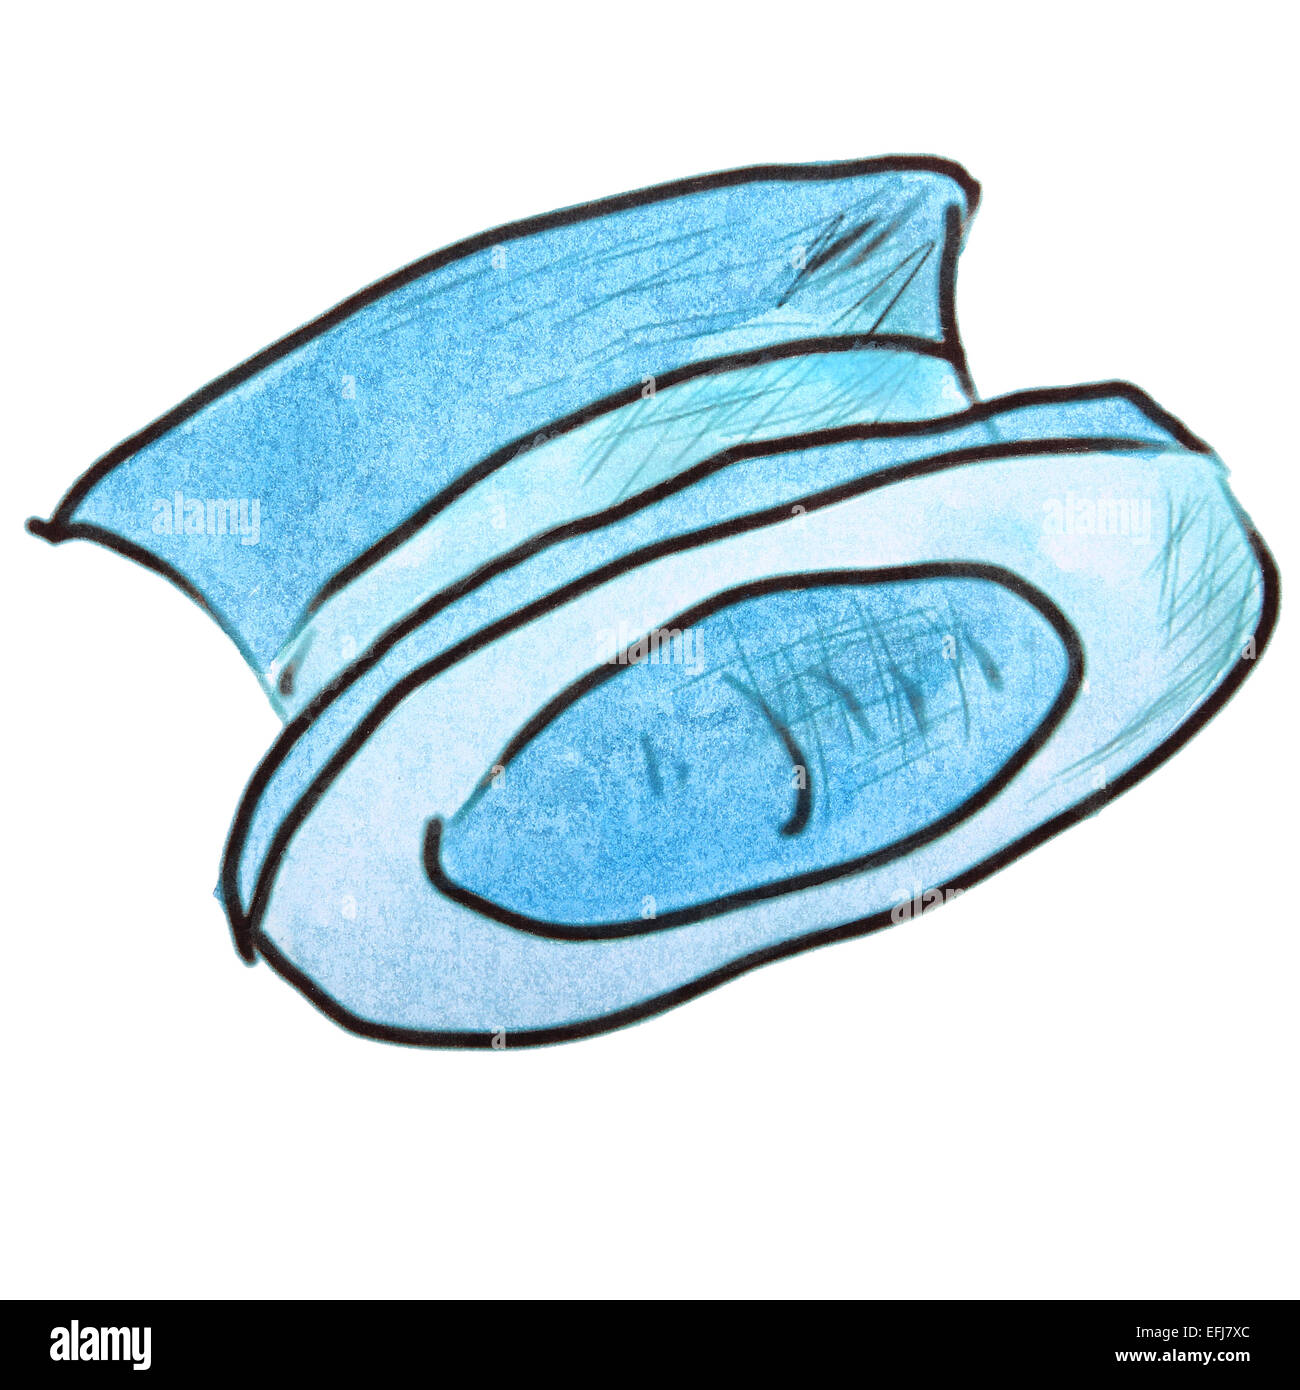 Aquarelle hat light blue personnage, isolé sur fond blanc Banque D'Images